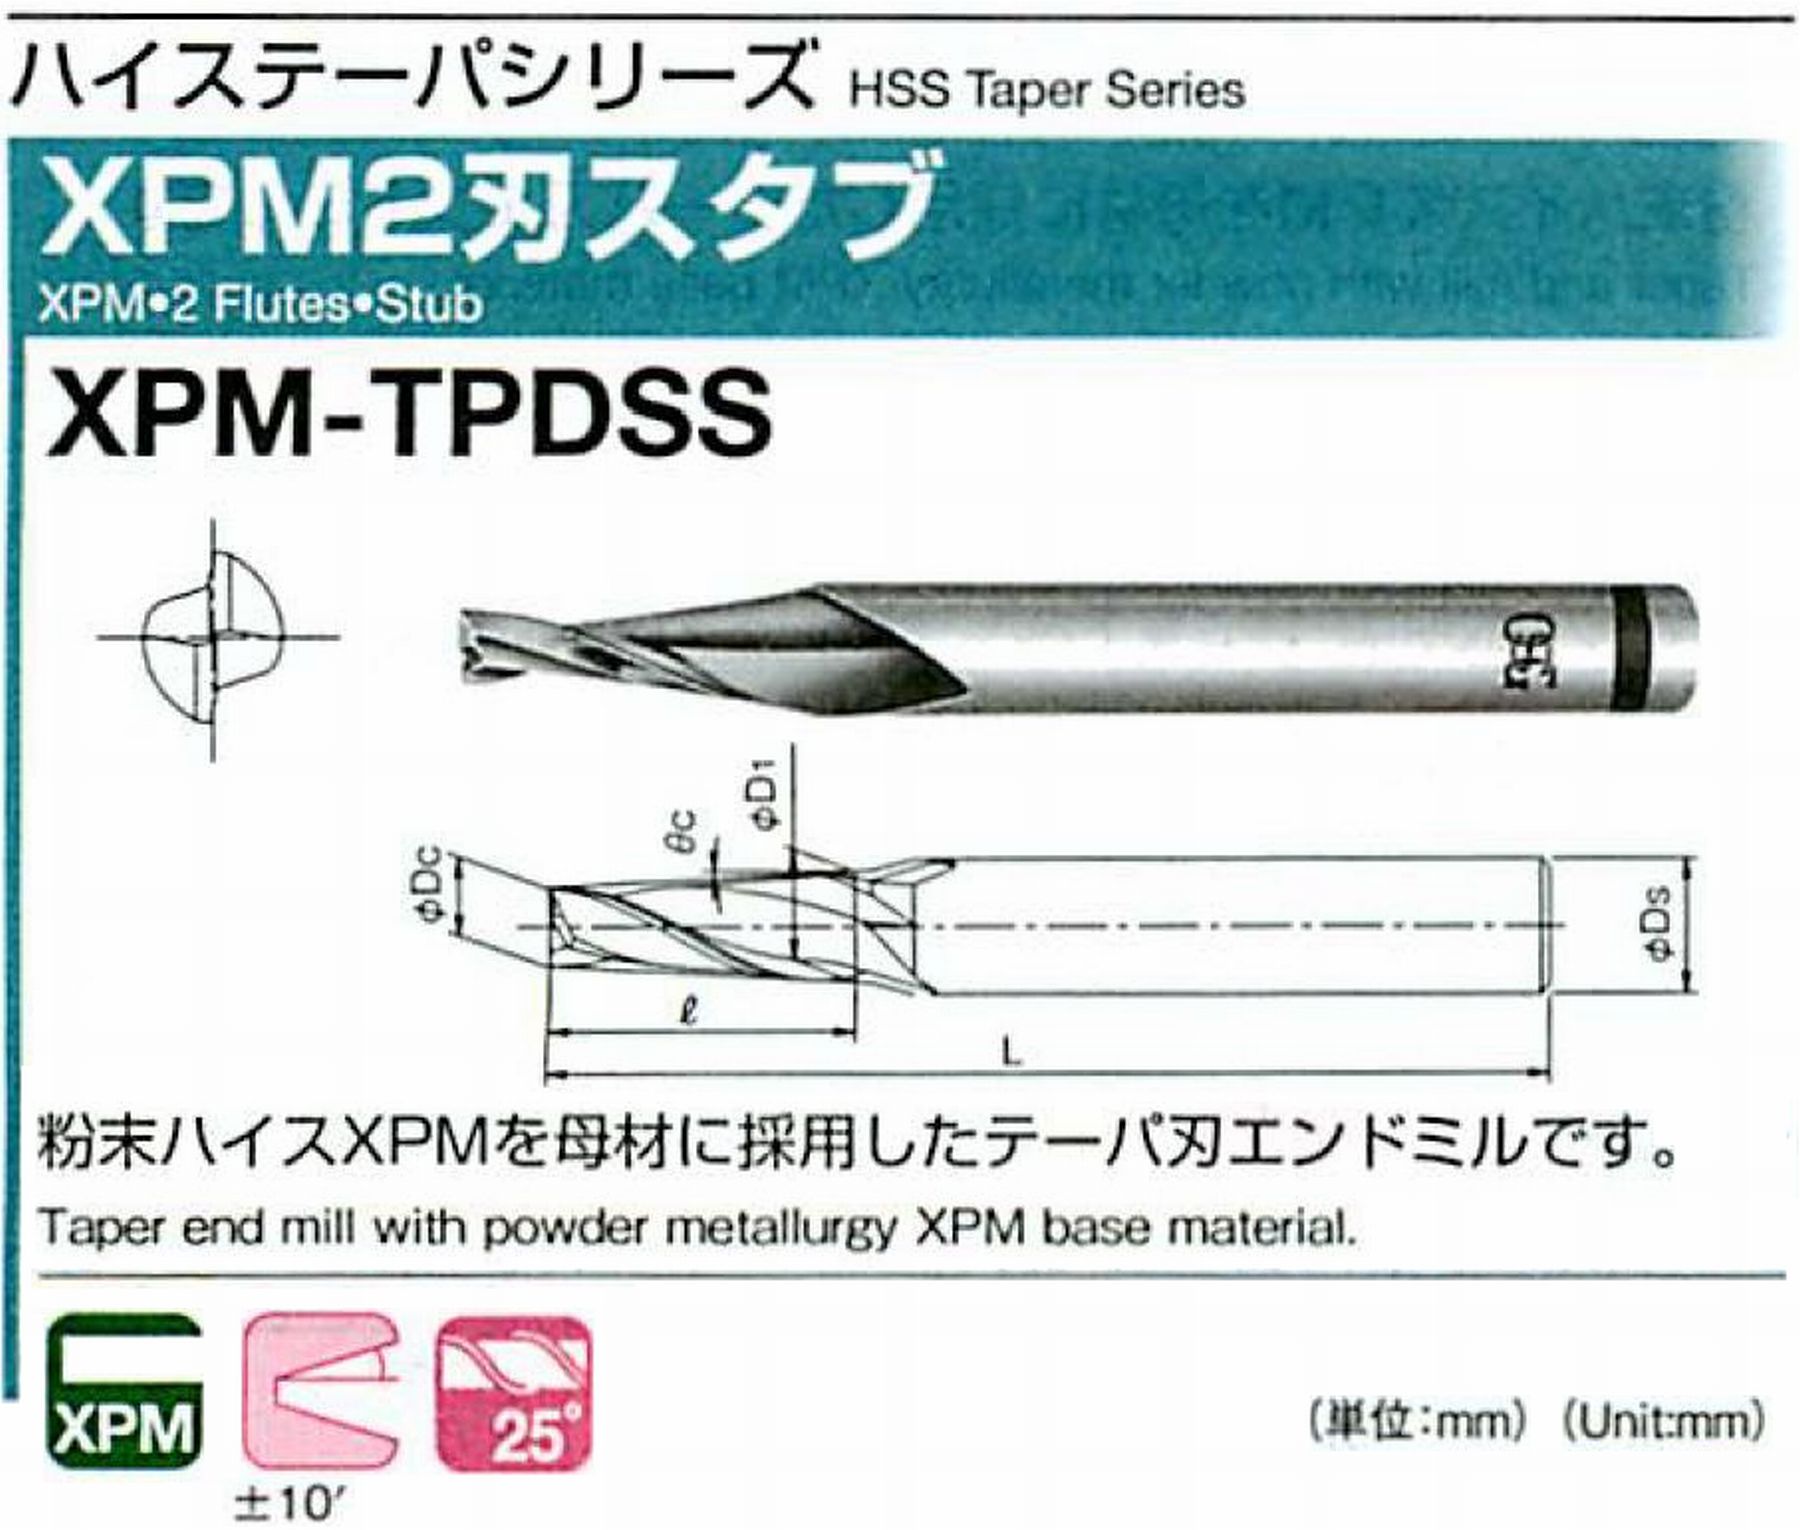 オーエスジー/OSG XPM2刃スタブ XPM-TPDSS 外径×刃部テーパ半角1.5×0.5° 全長47 刃長3 シャンク径6mm 大端径1.55